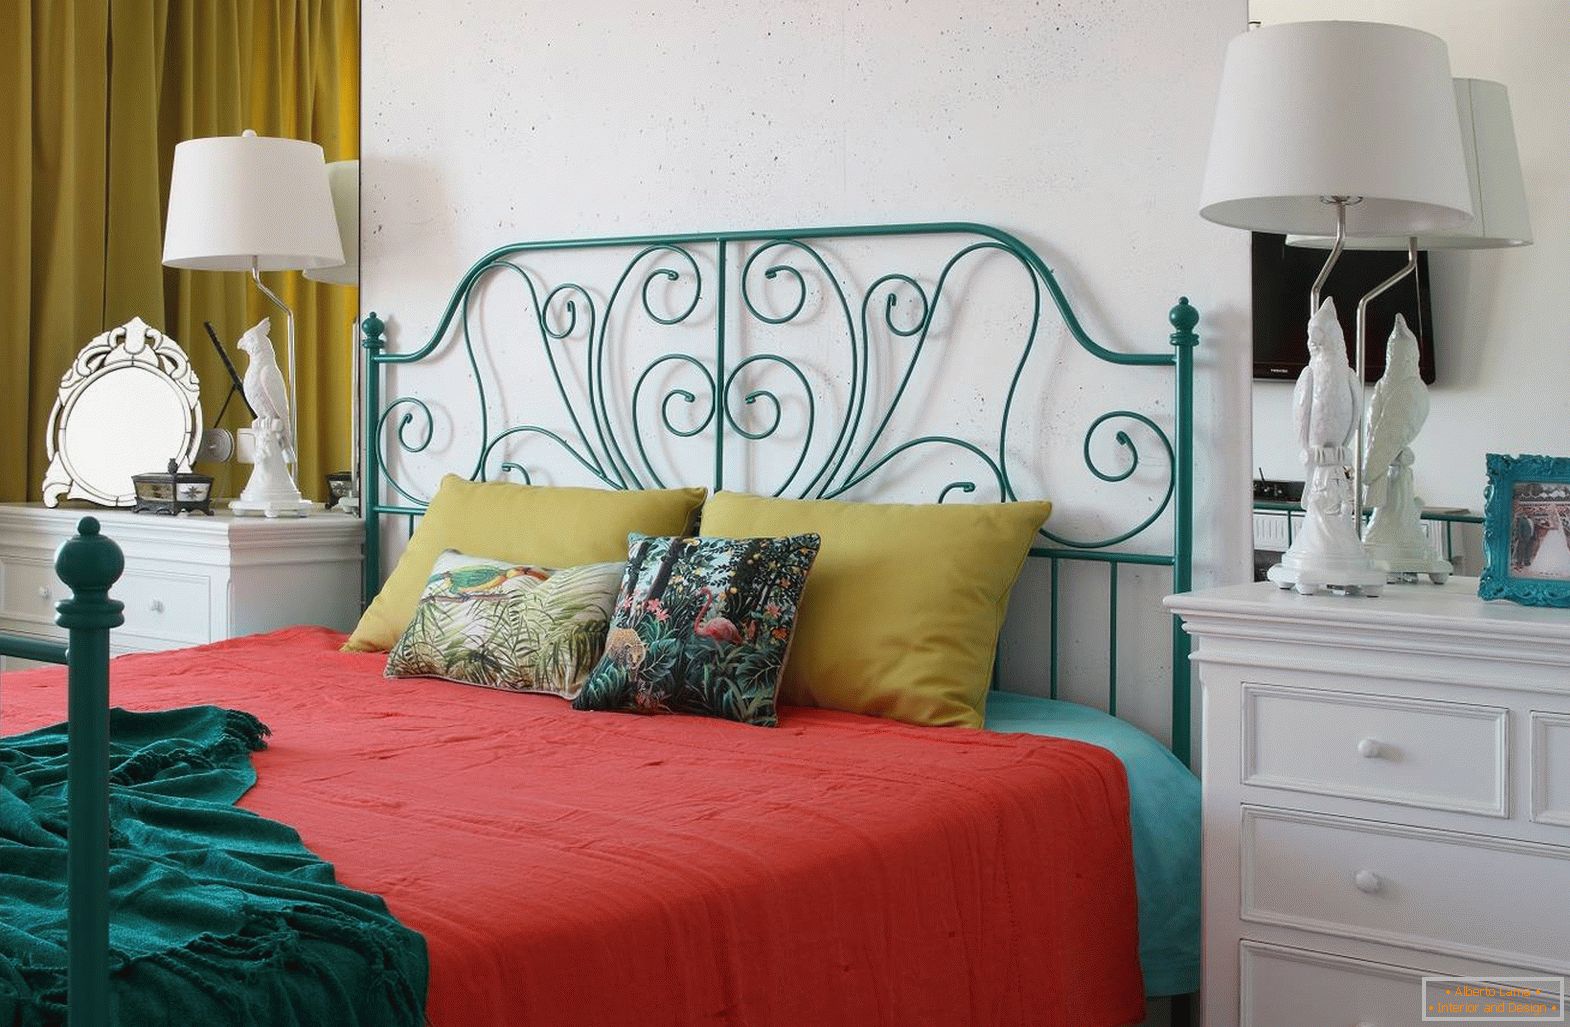 El dormitorio с кроватью в стиле 60-х